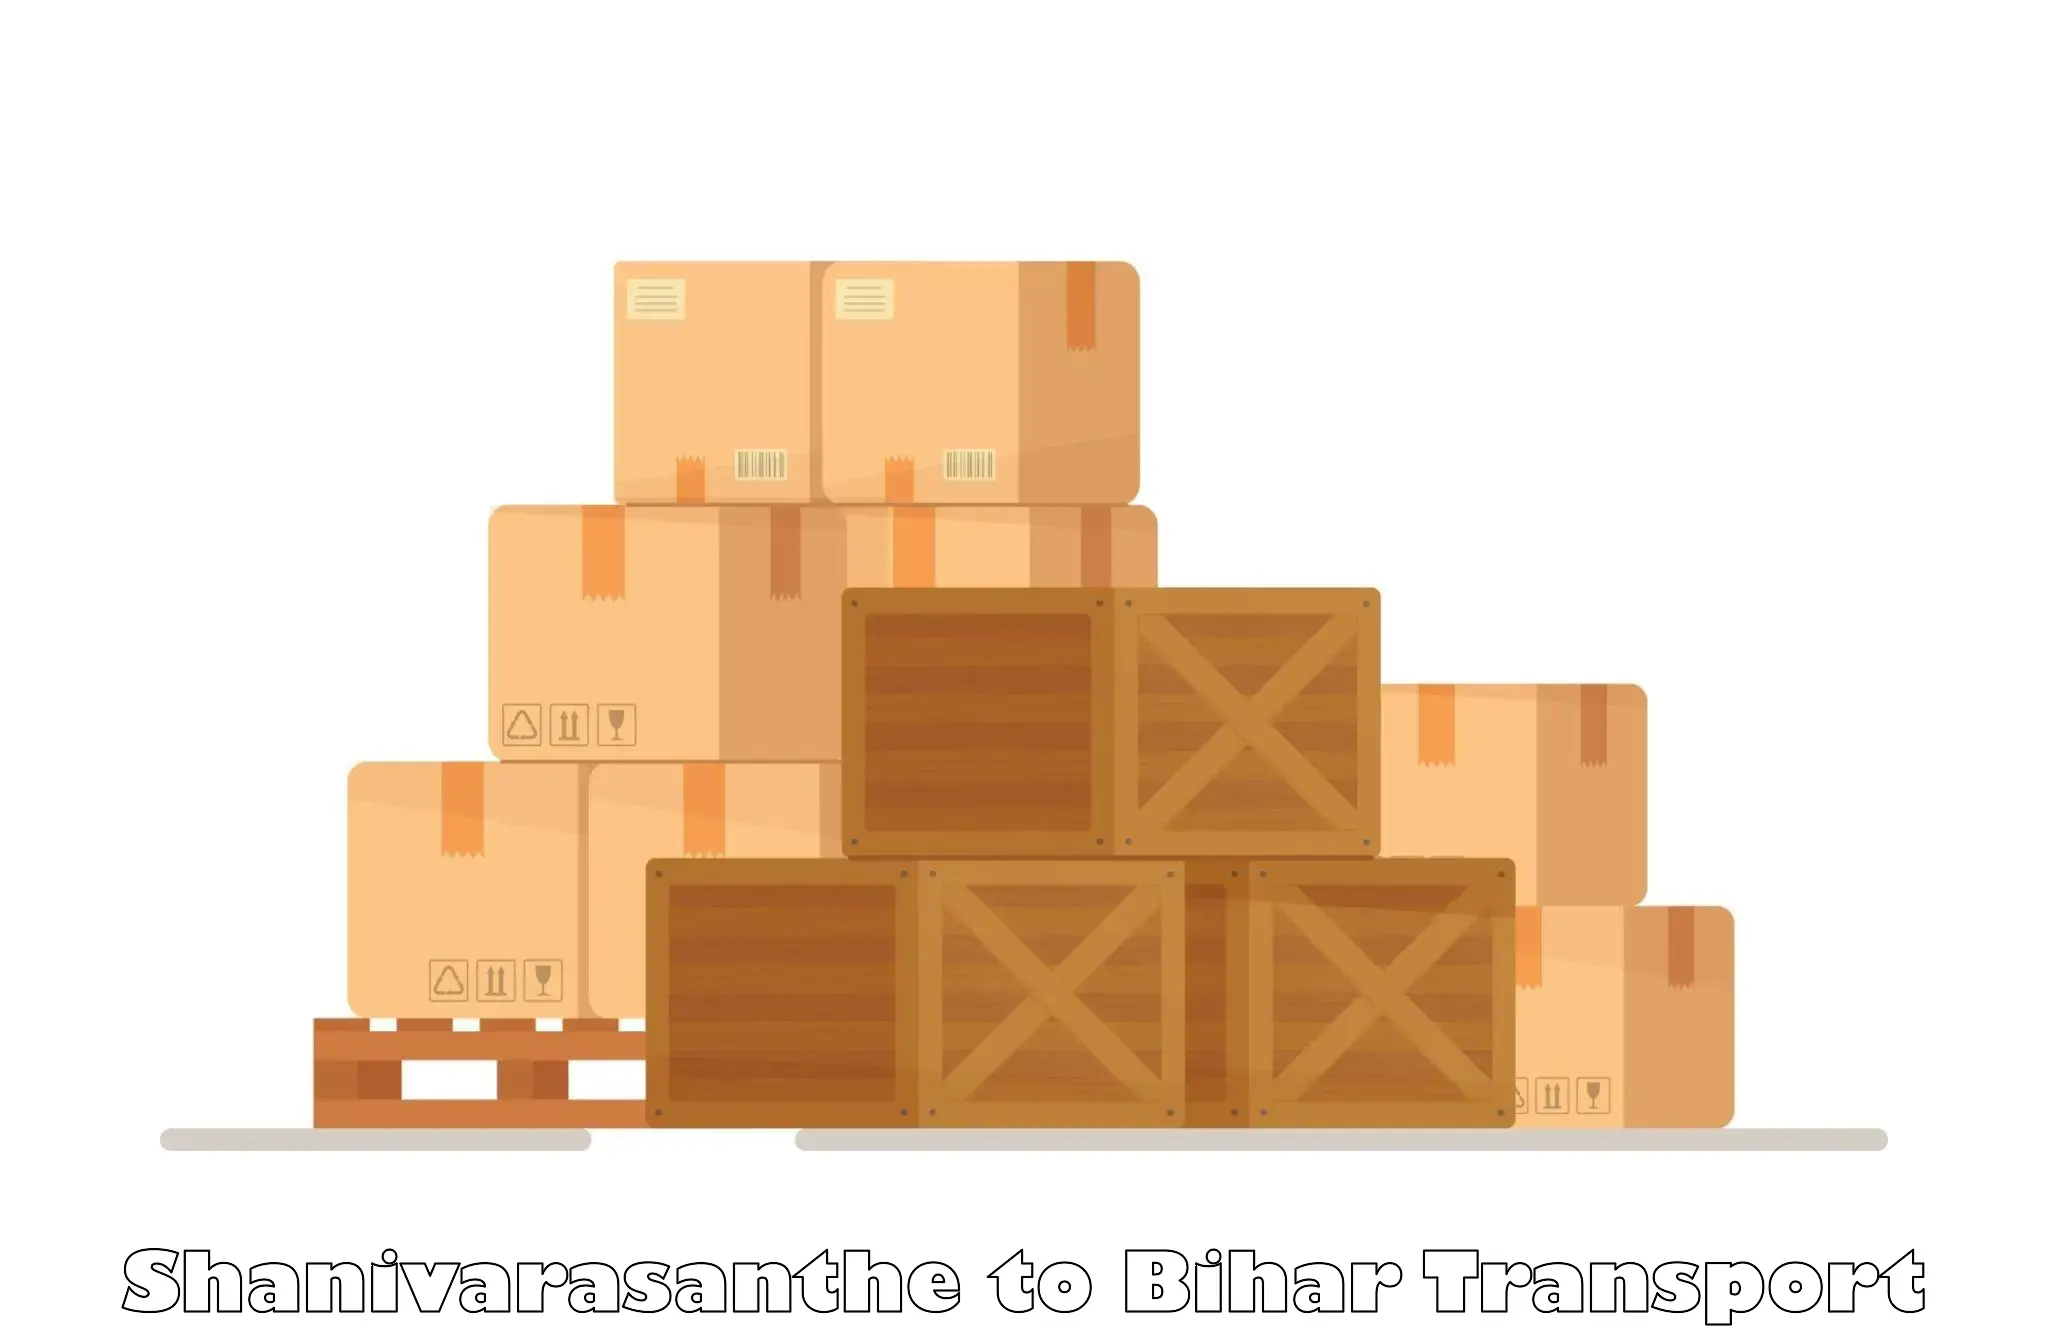 Package delivery services Shanivarasanthe to Bikramganj